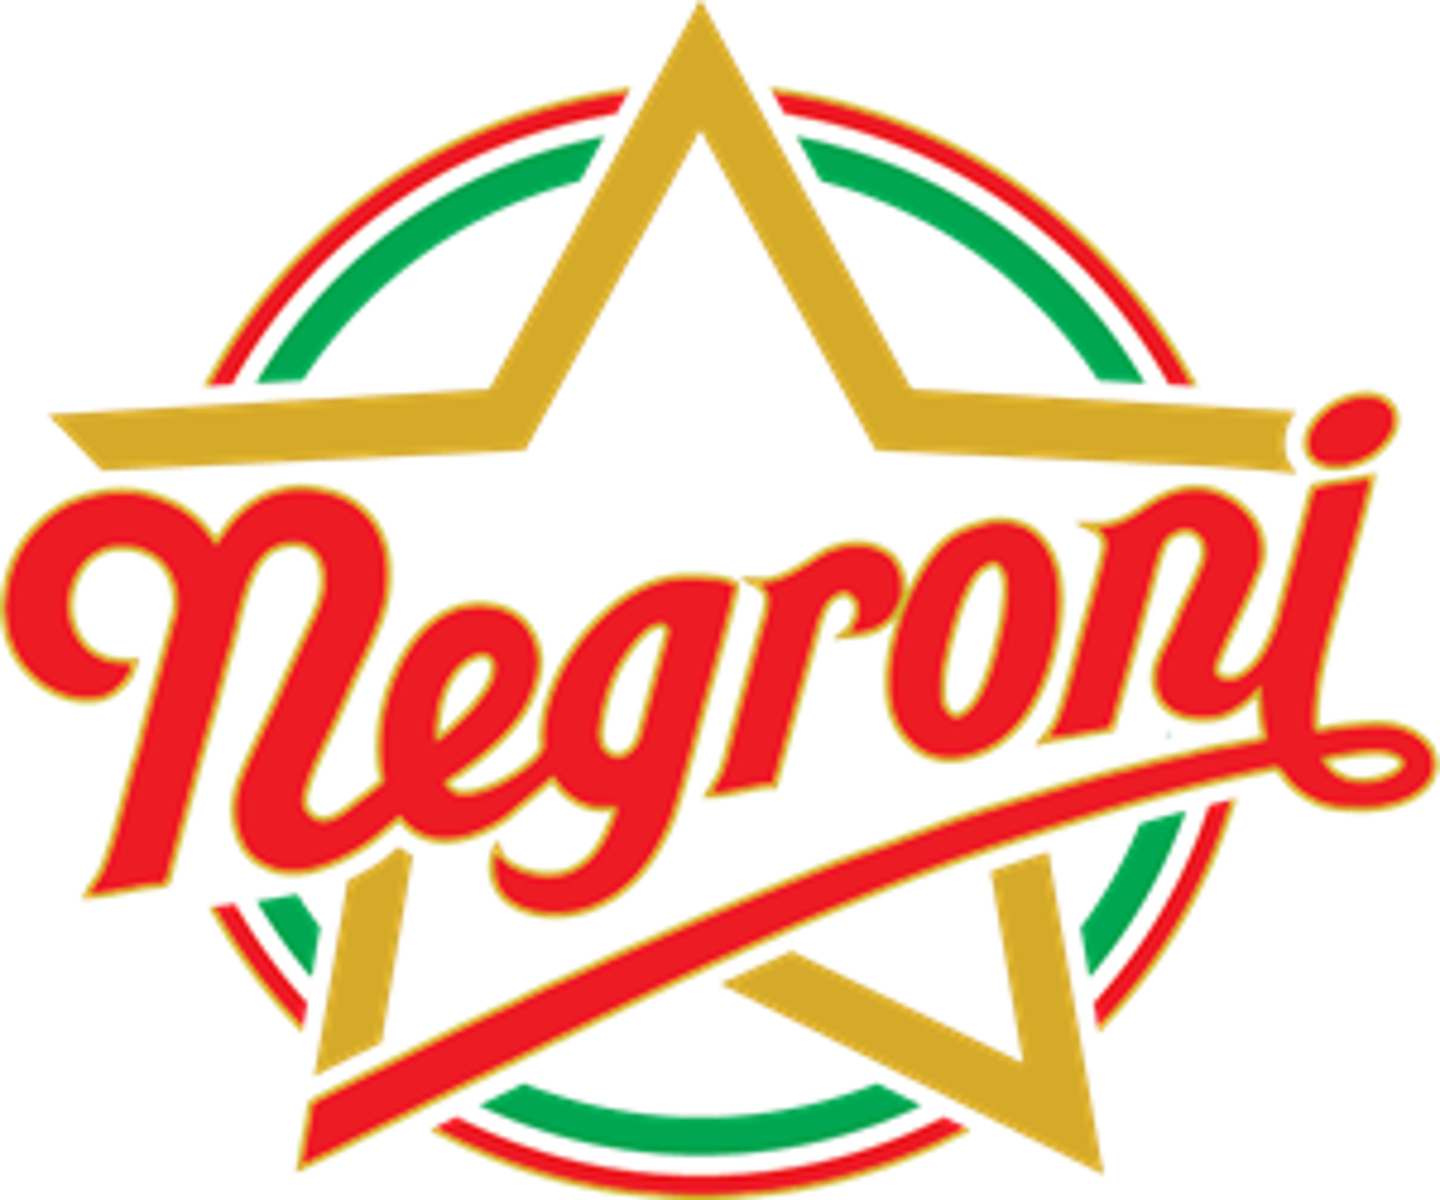 Negroni_logo.png